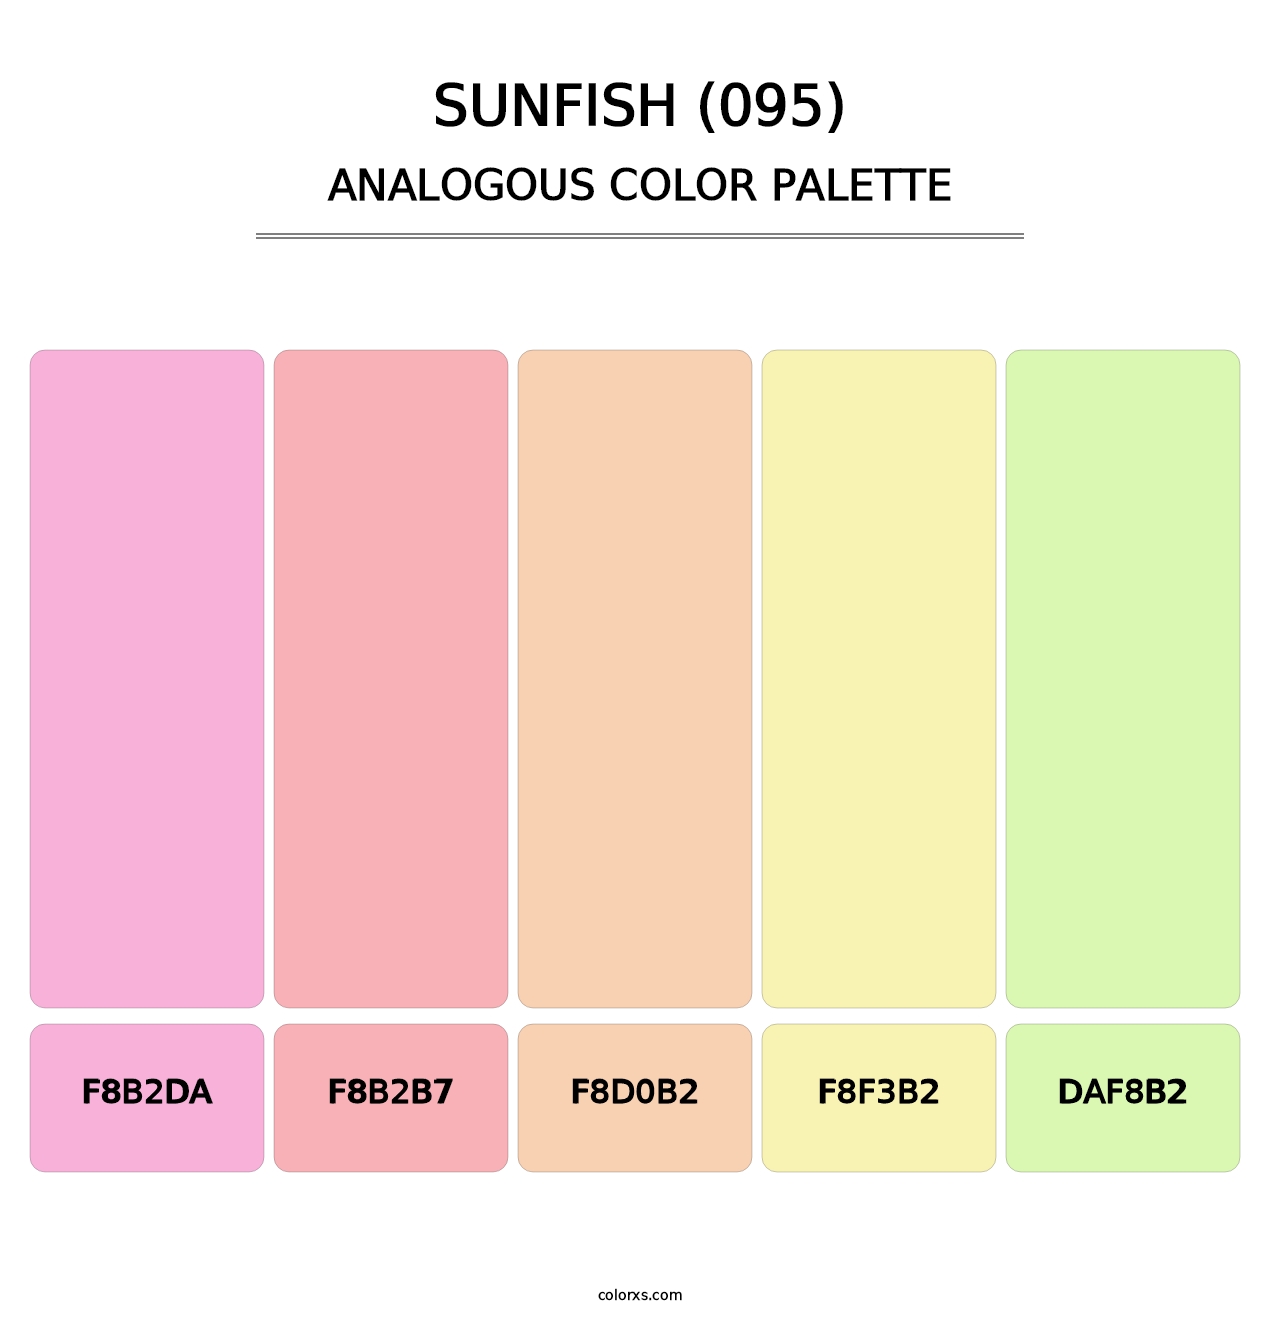 Sunfish (095) - Analogous Color Palette